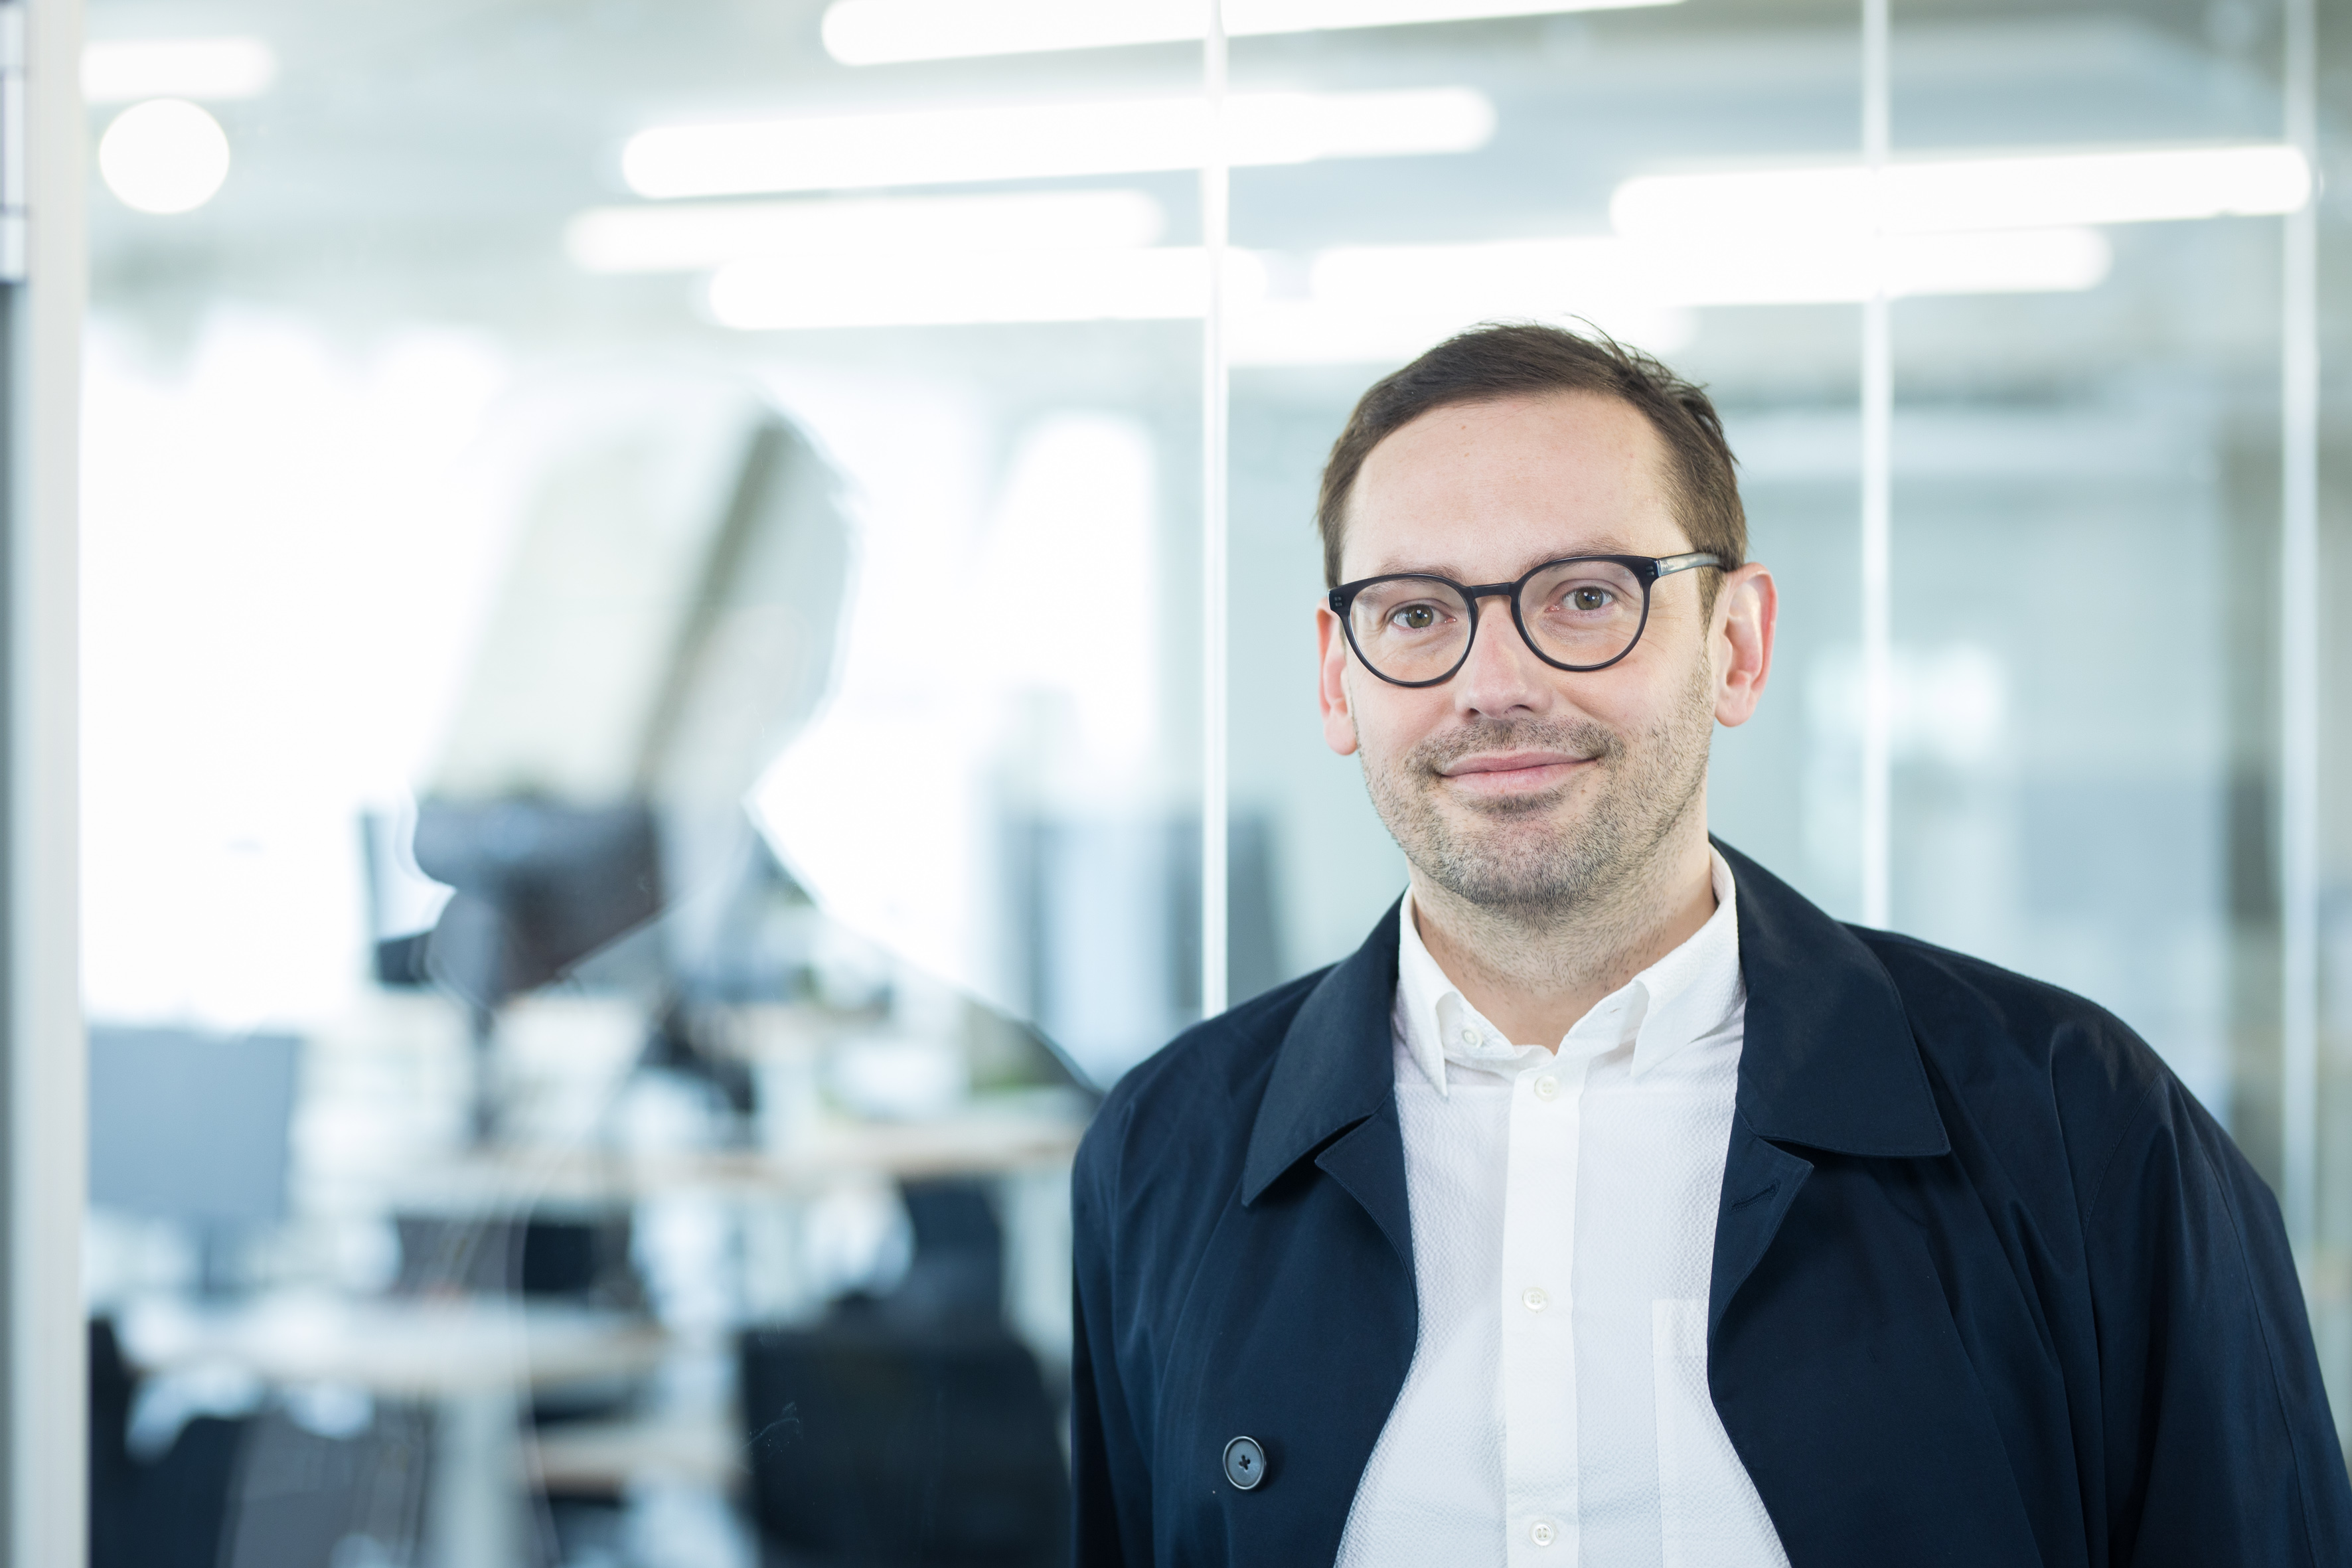 Martin Jordan, Head of Design beim DigitalService, steht in einem Bürogebäude vor einer Glaswand. Er trägt eine Brille, ein weißes Hemd und eine leichte blaue Jacke.